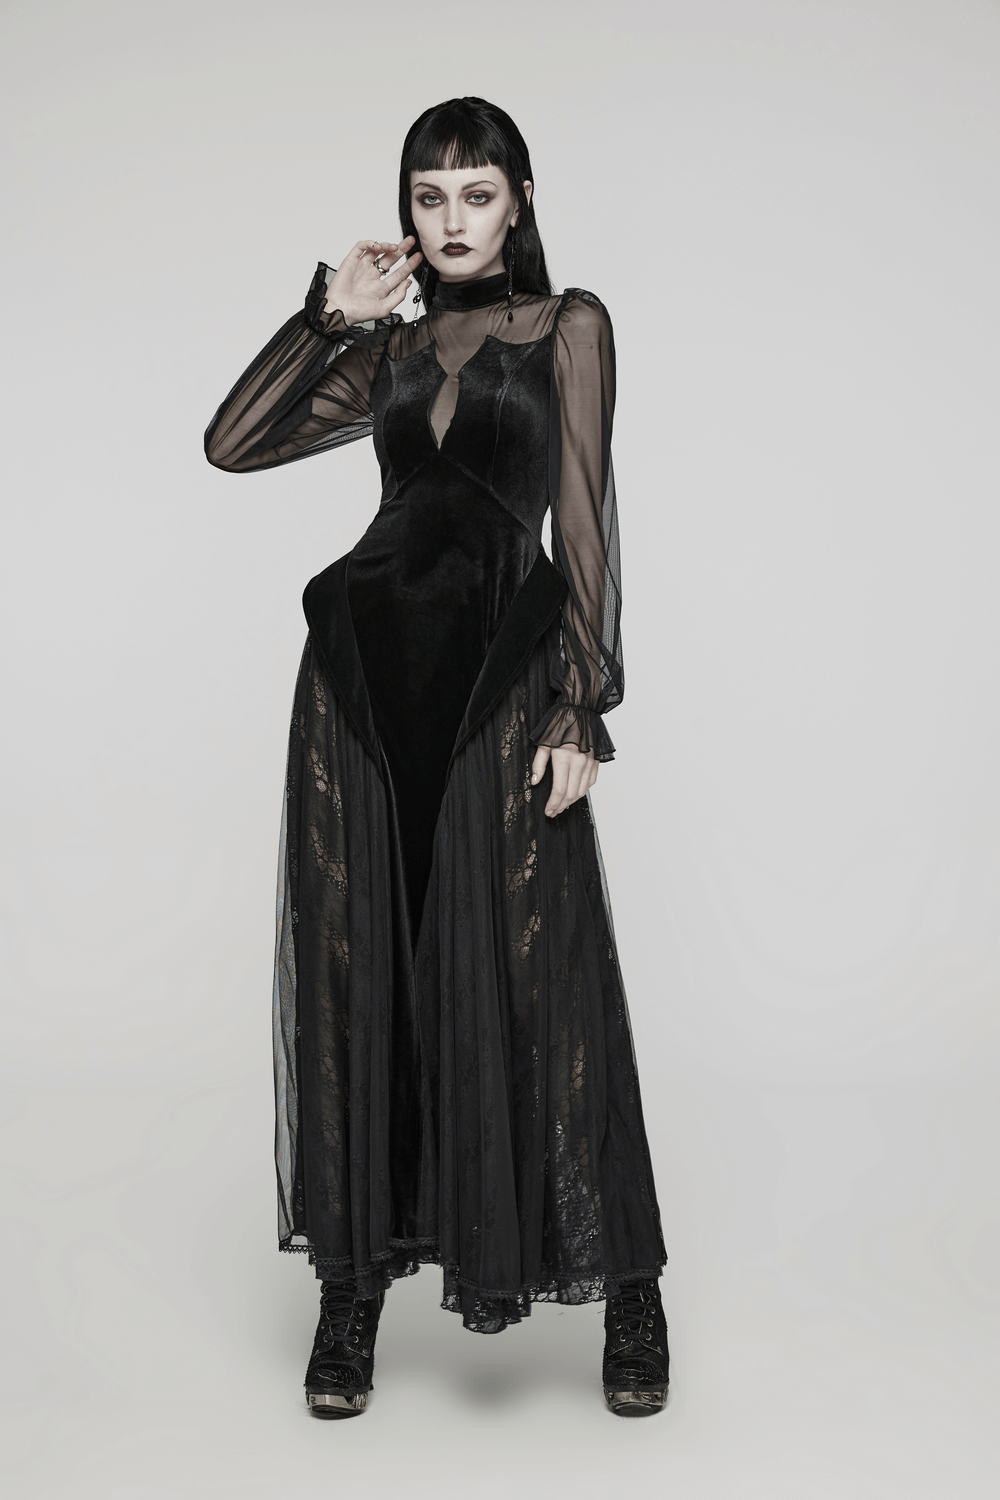 Elegant Black Velvet Mesh Dress with Gothic Charm